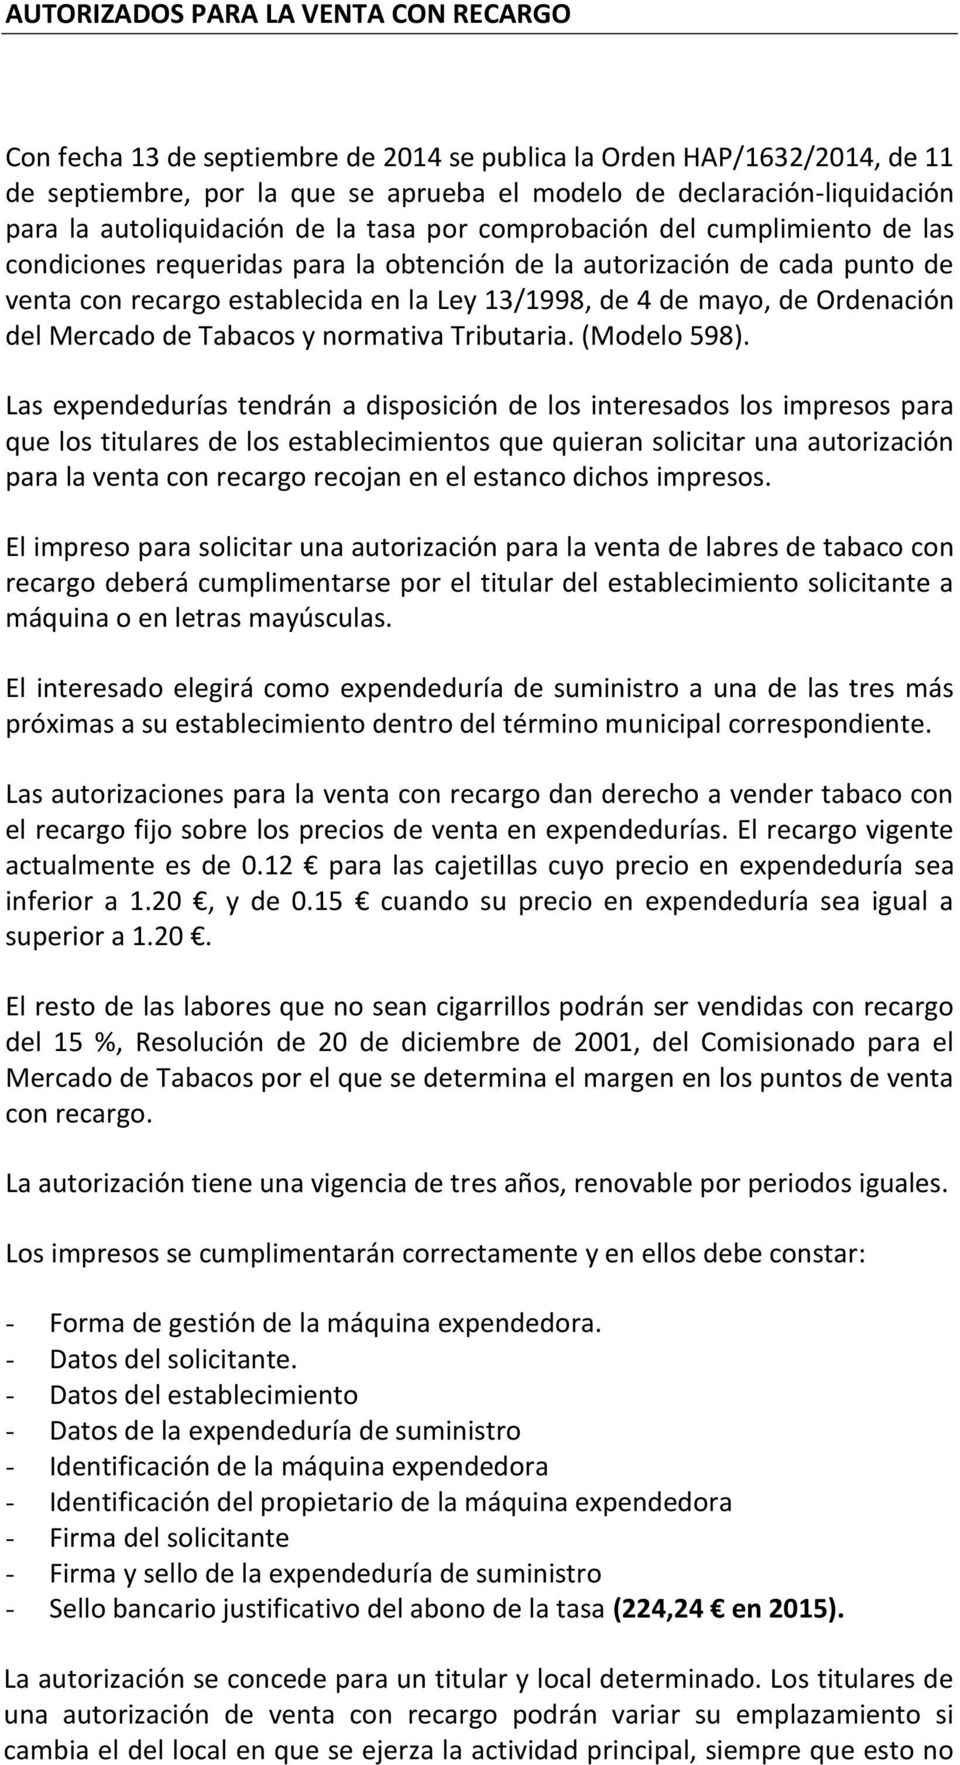 de mayo, de Ordenación del Mercado de Tabacos y normativa Tributaria. (Modelo 598).